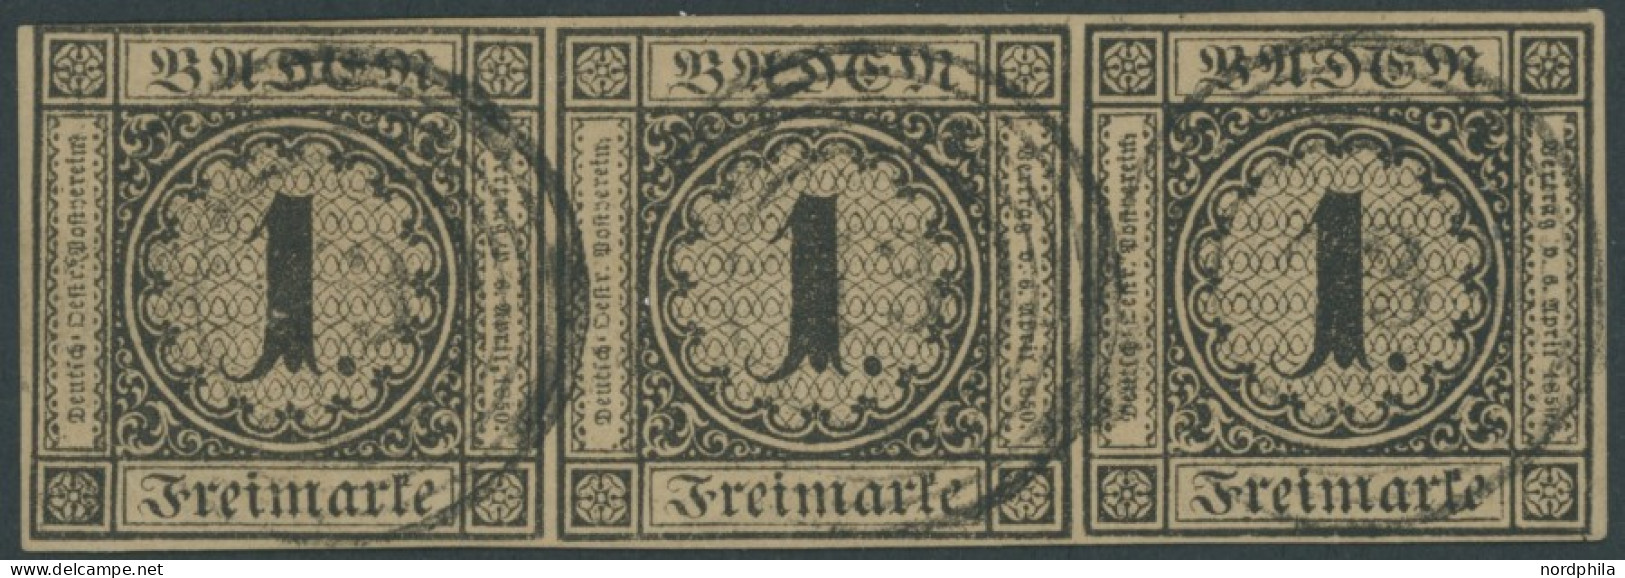 BADEN 1b O, 1851, 1 Kr. Schwarz Auf Braun Im Waagerechten Dreierstreifen, Linke Marke Oben Links Minimal Tangiert Sonst  - Afgestempeld